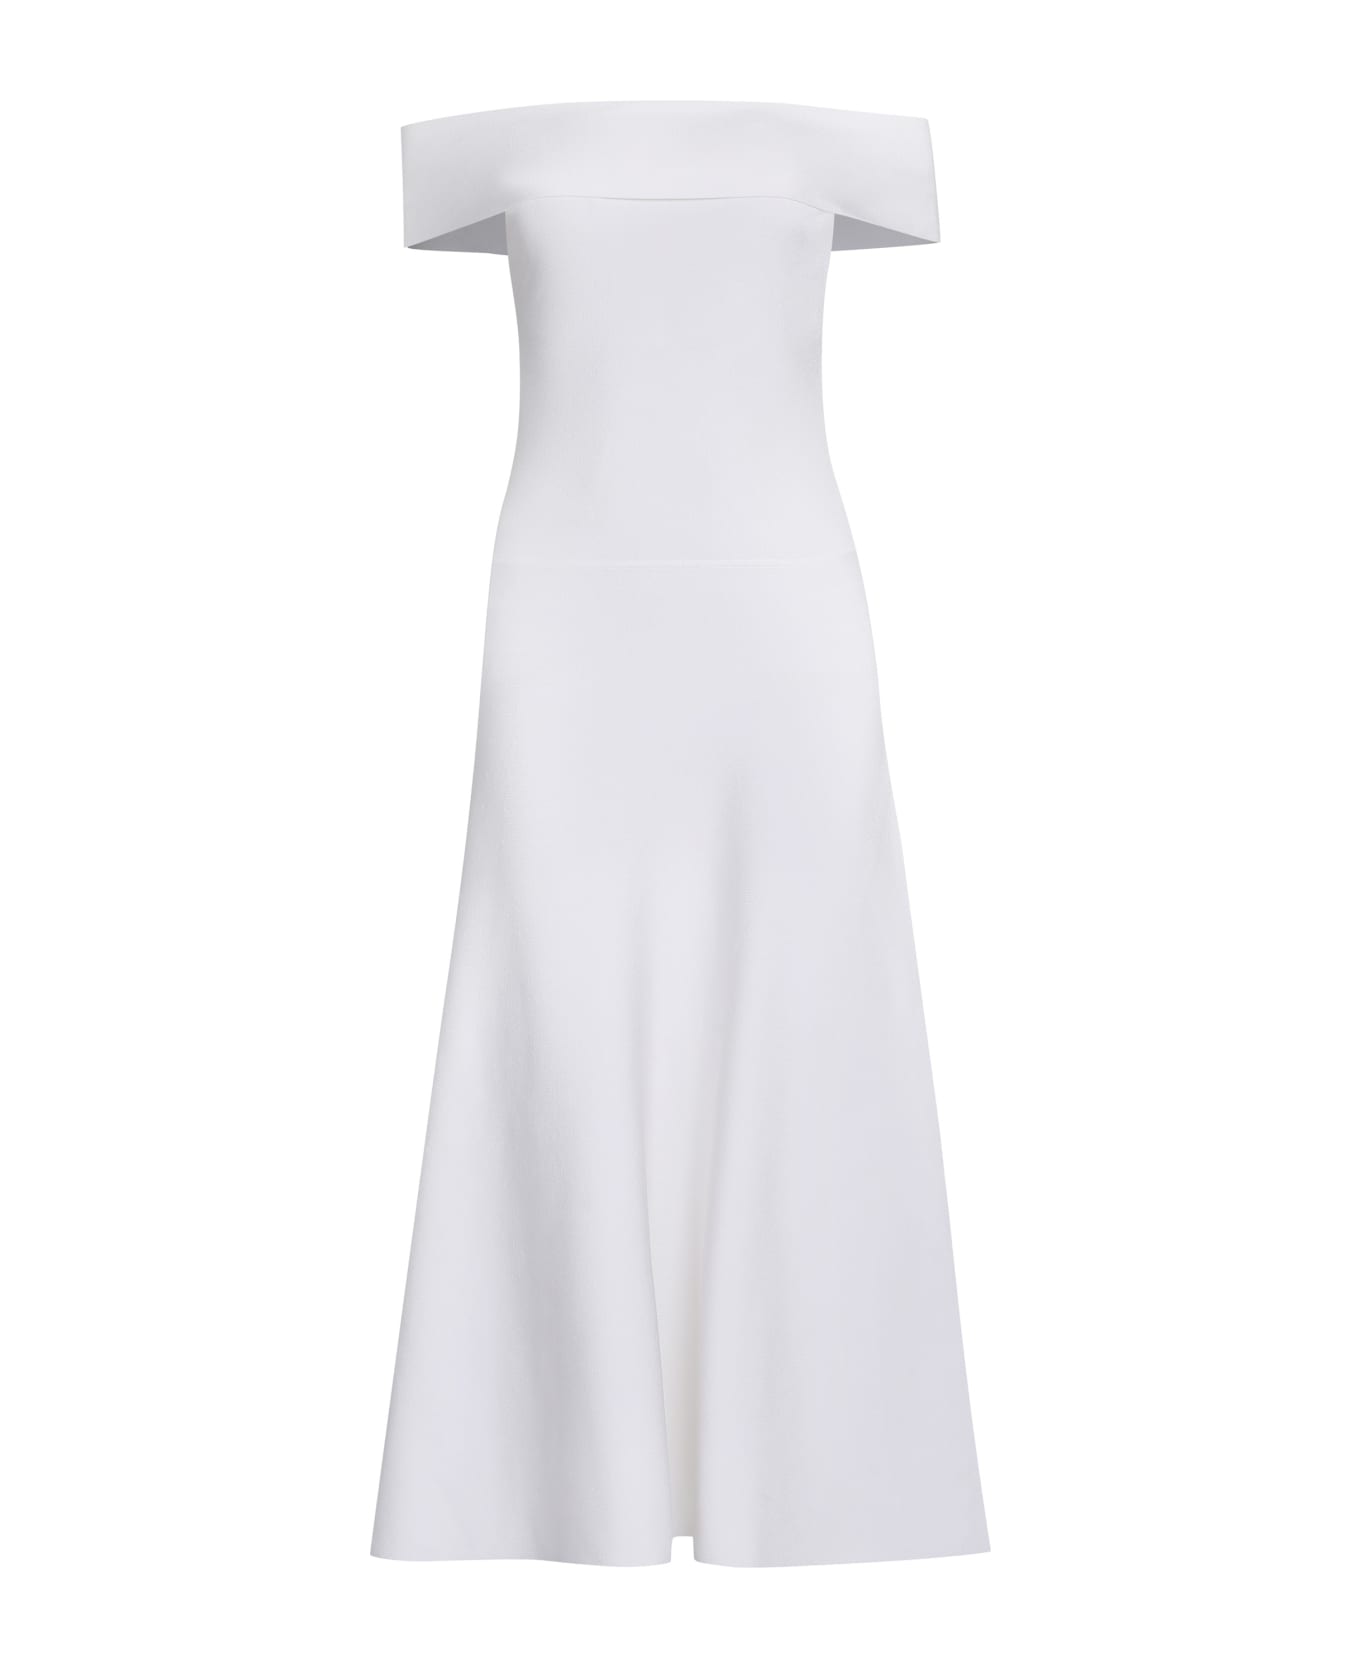 Fabiana Filippi Viscose Dress - White